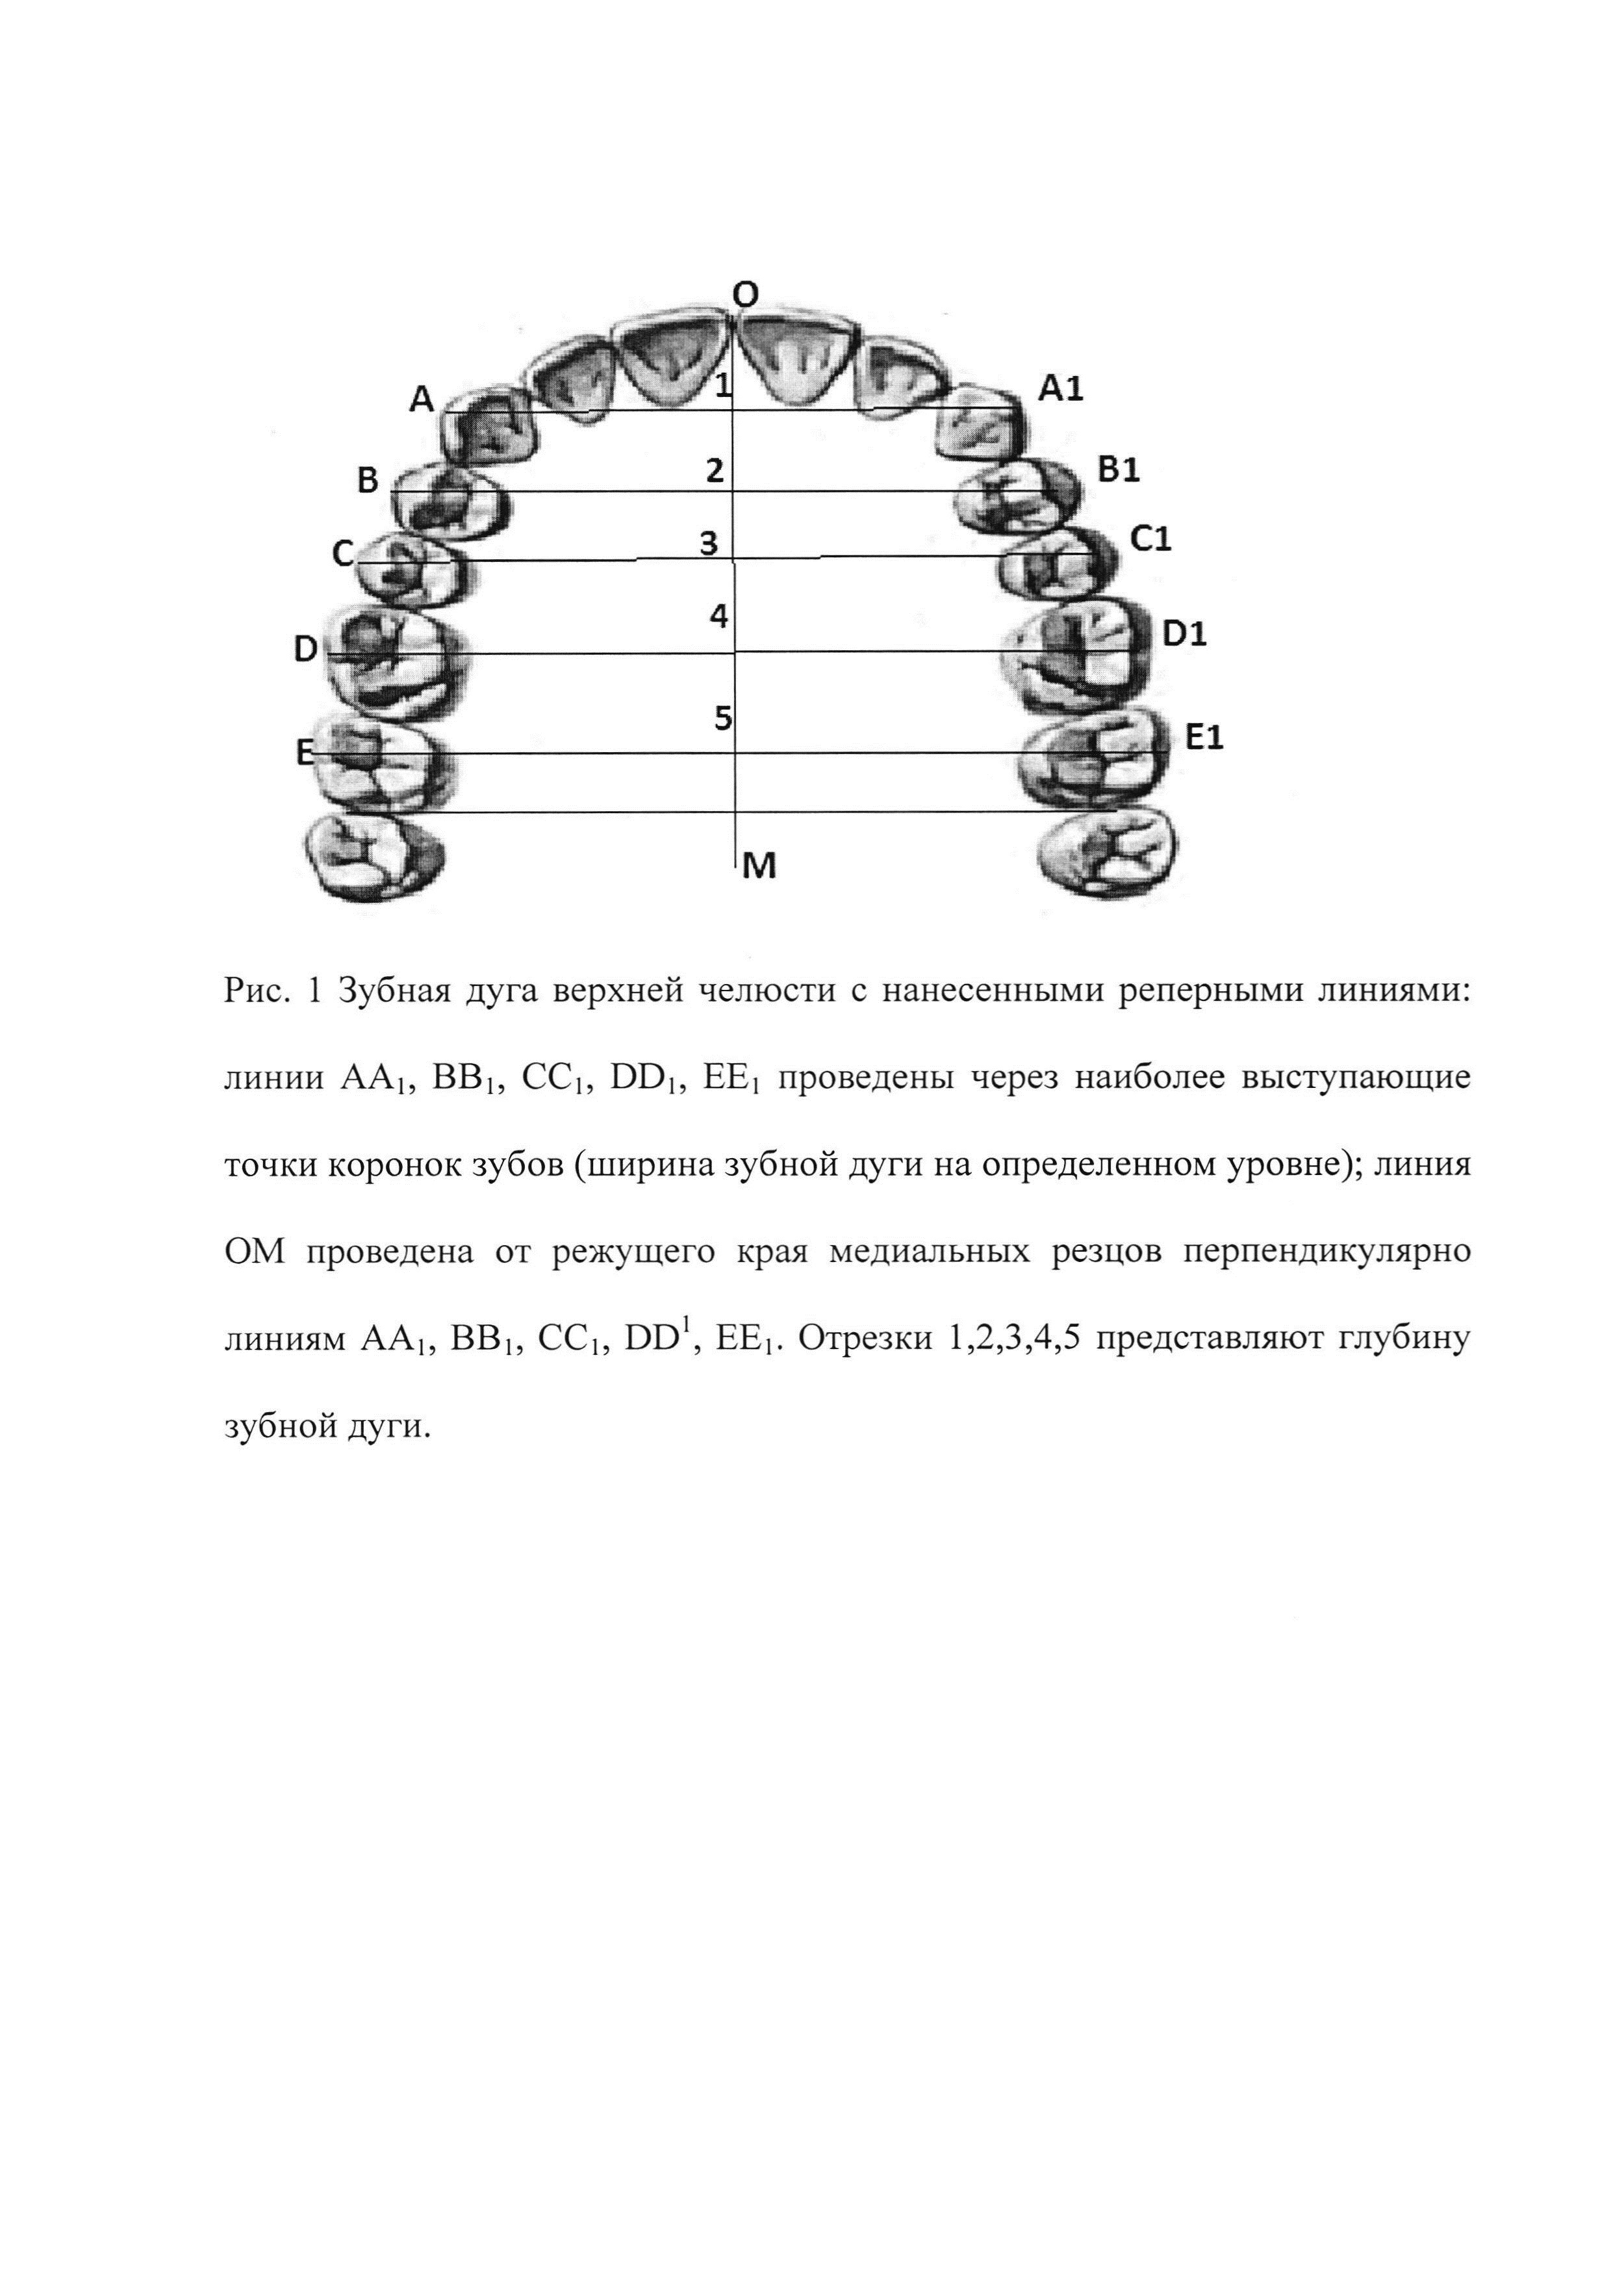 Способ расчета длины зубной дуги верхней челюсти